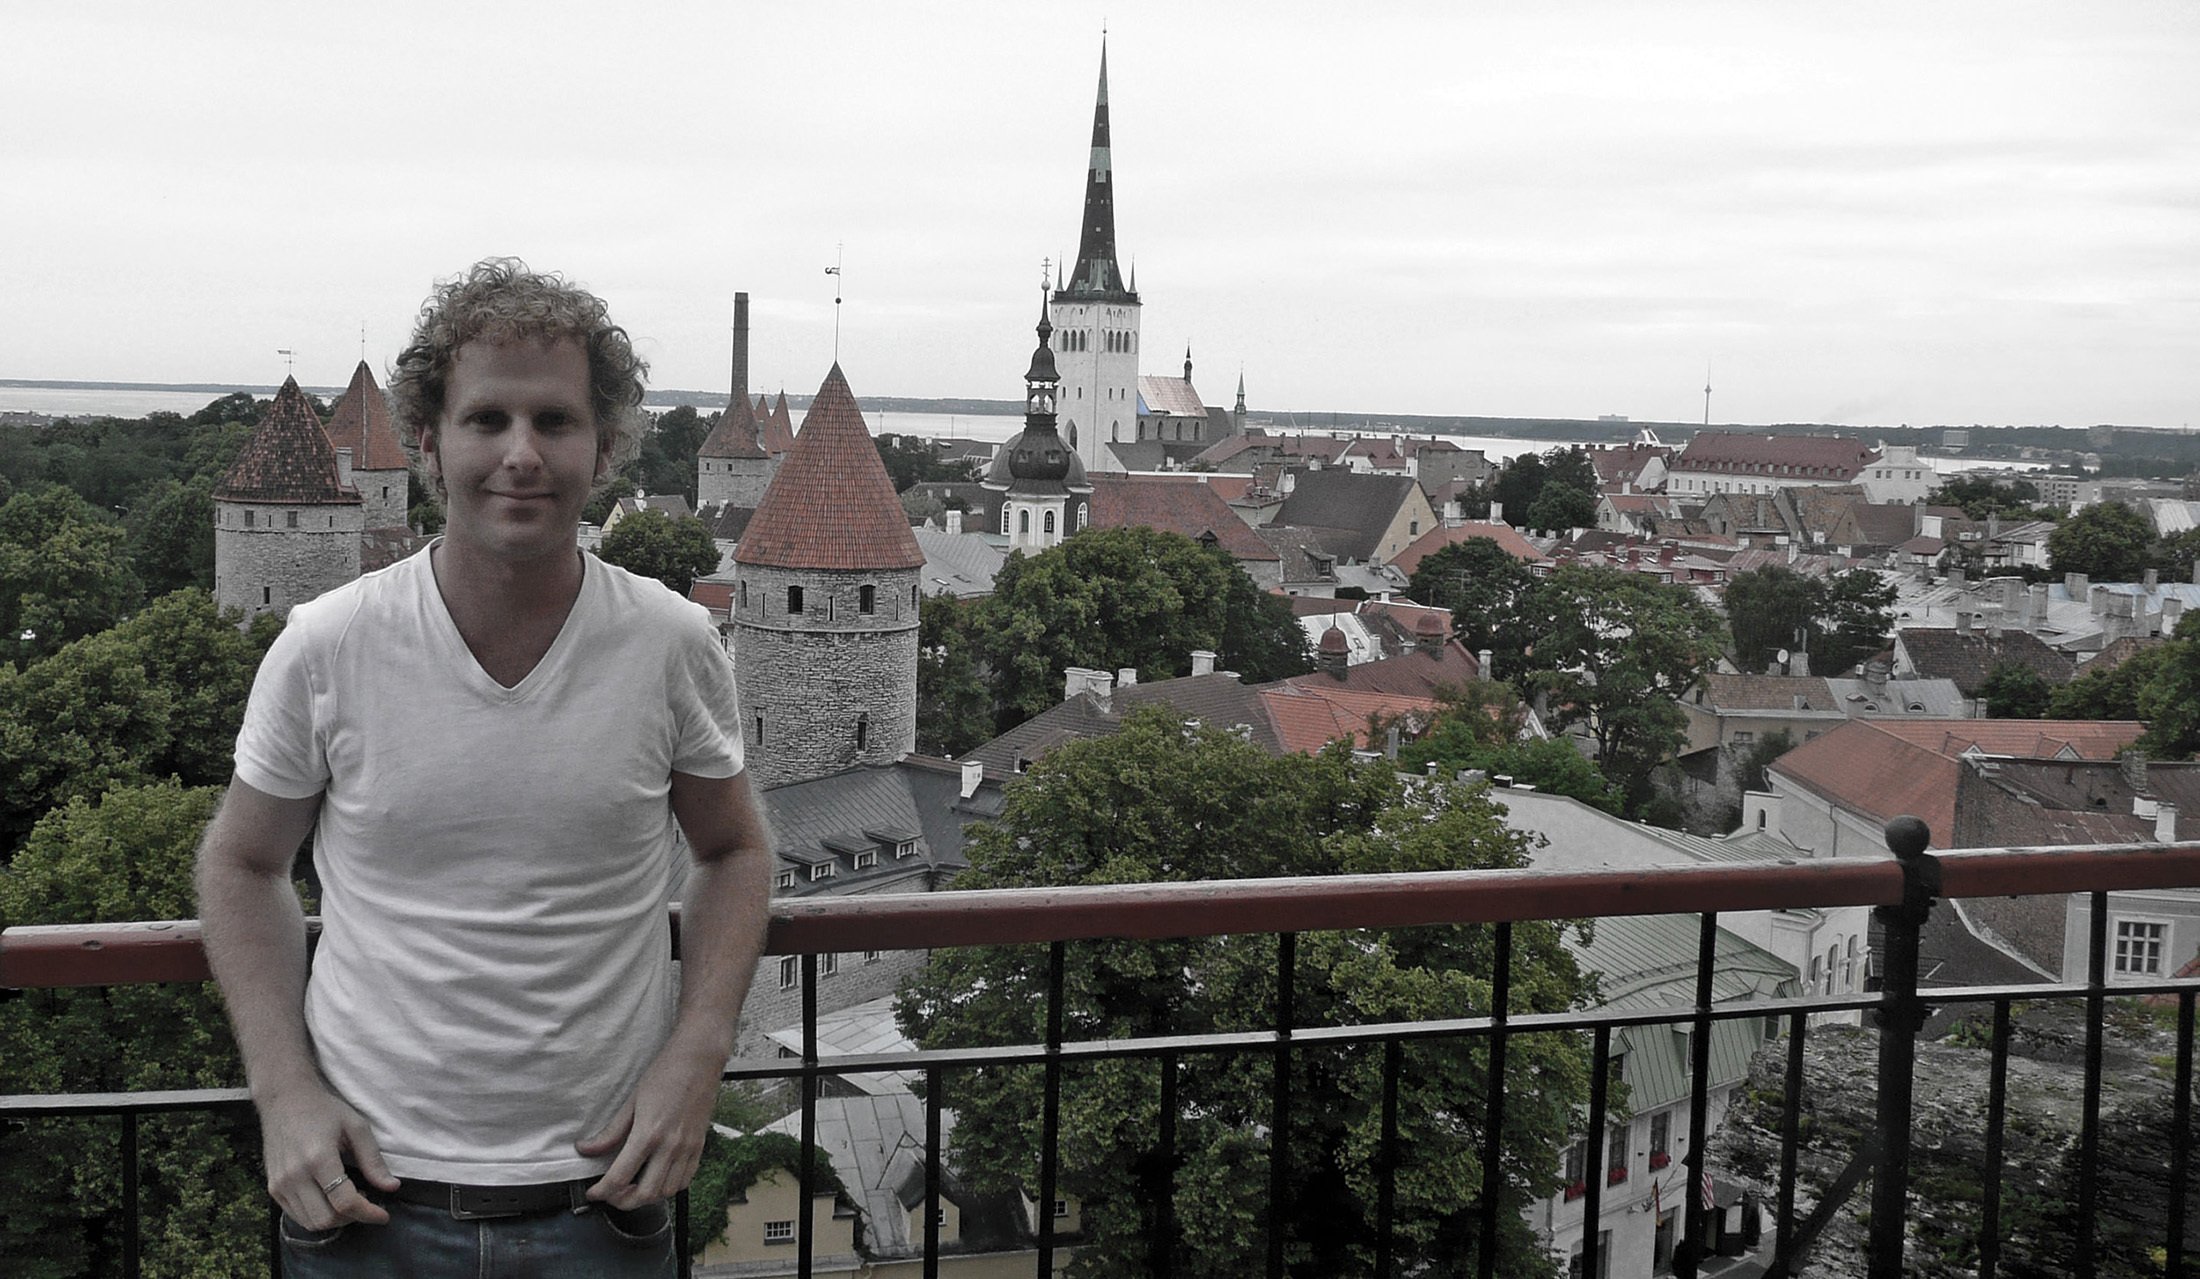 Ben in Tallinn Estonia